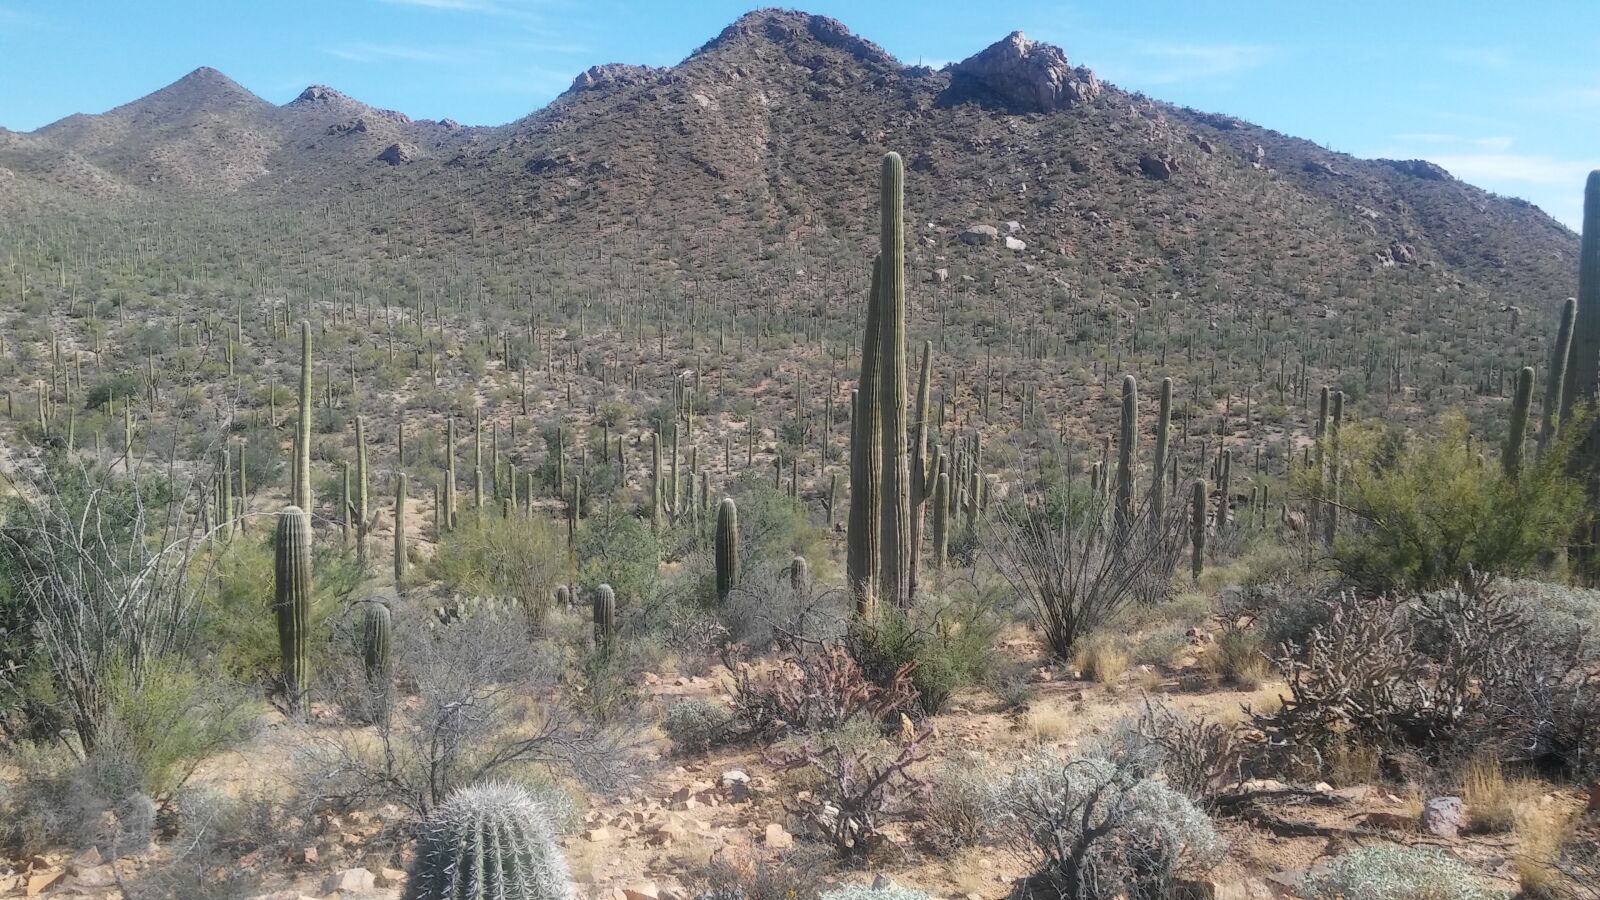 LG G STYLO sample photo. Cactus, tucson, saguaro photography